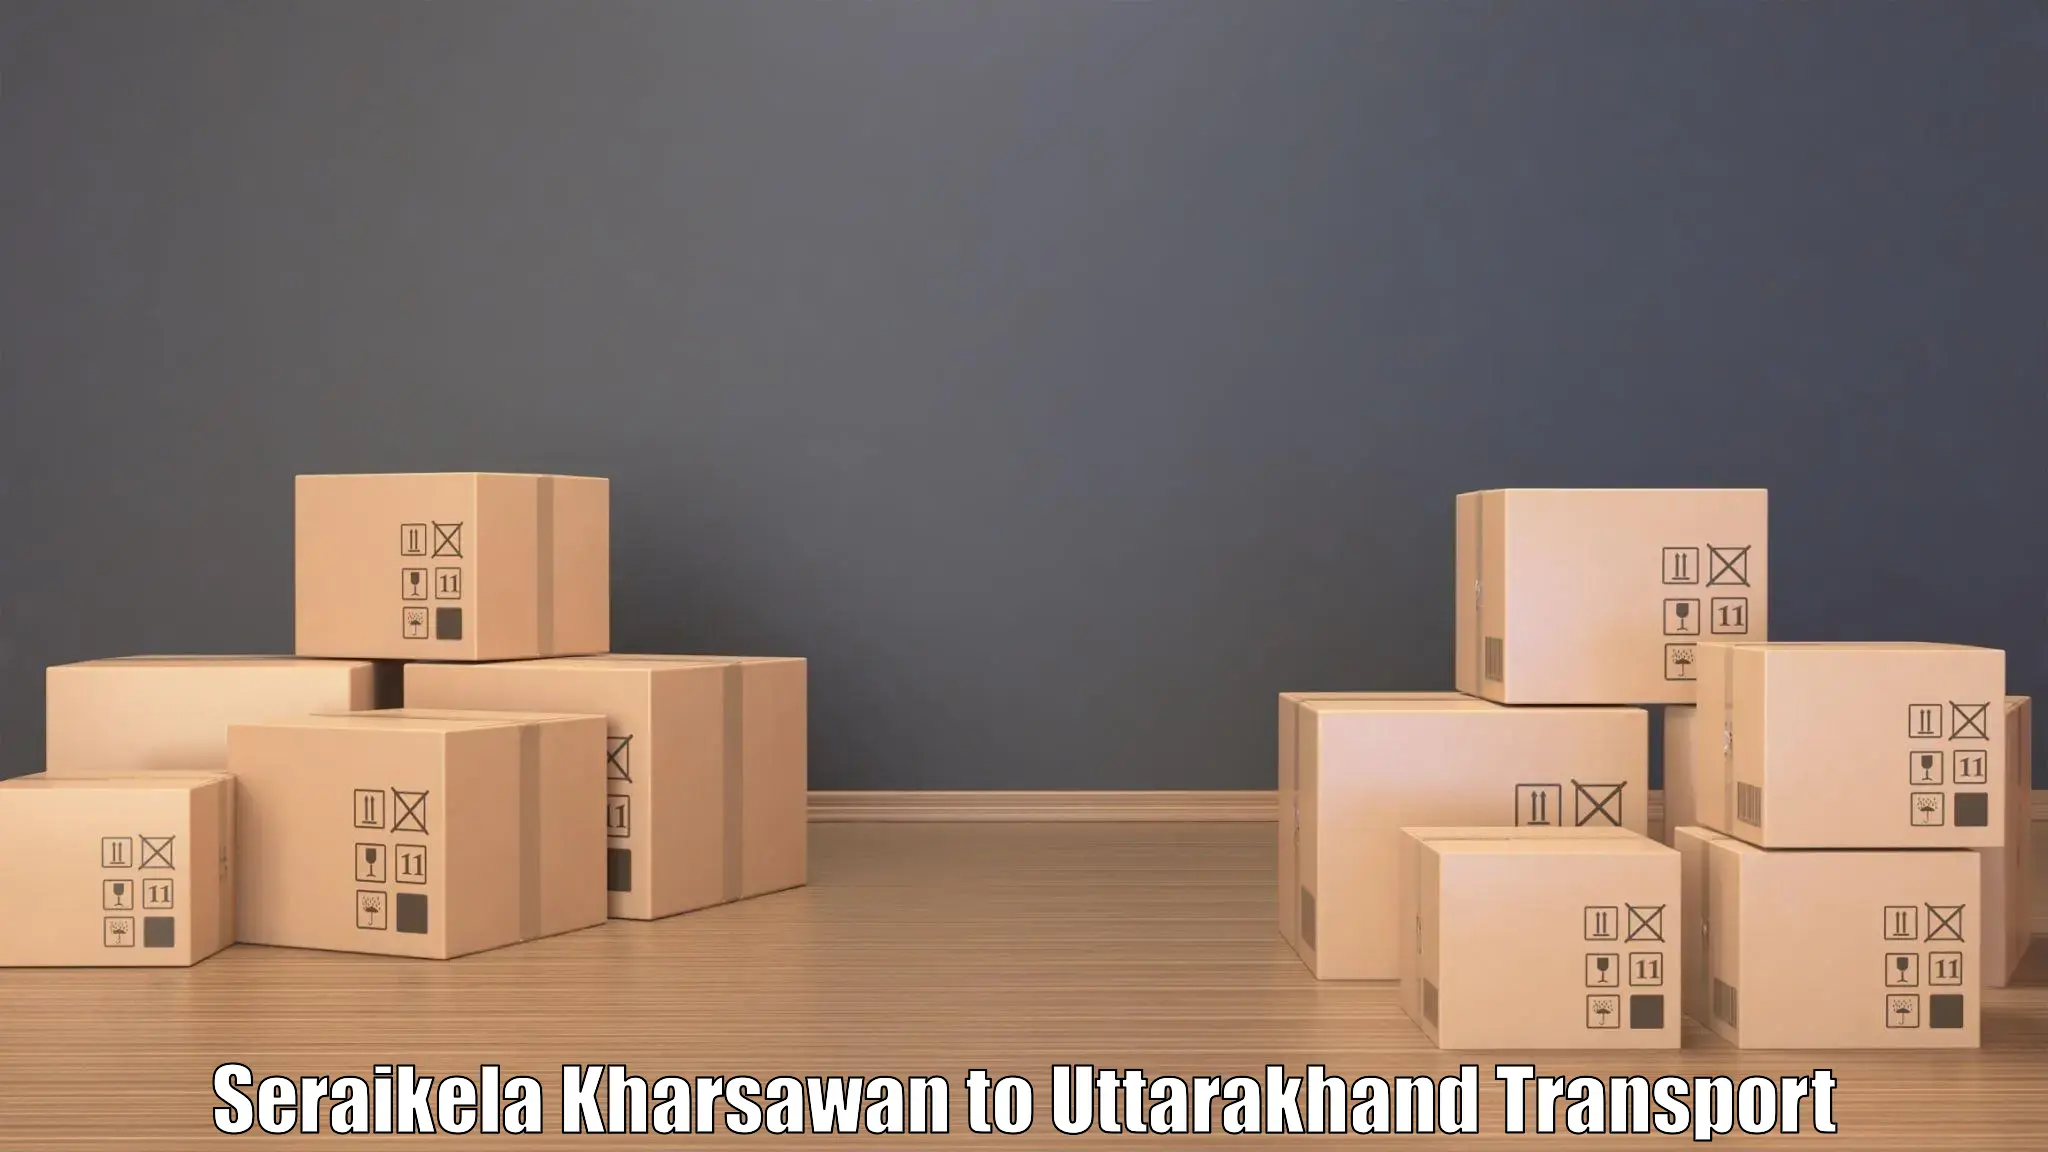 Nearest transport service Seraikela Kharsawan to Kotdwara